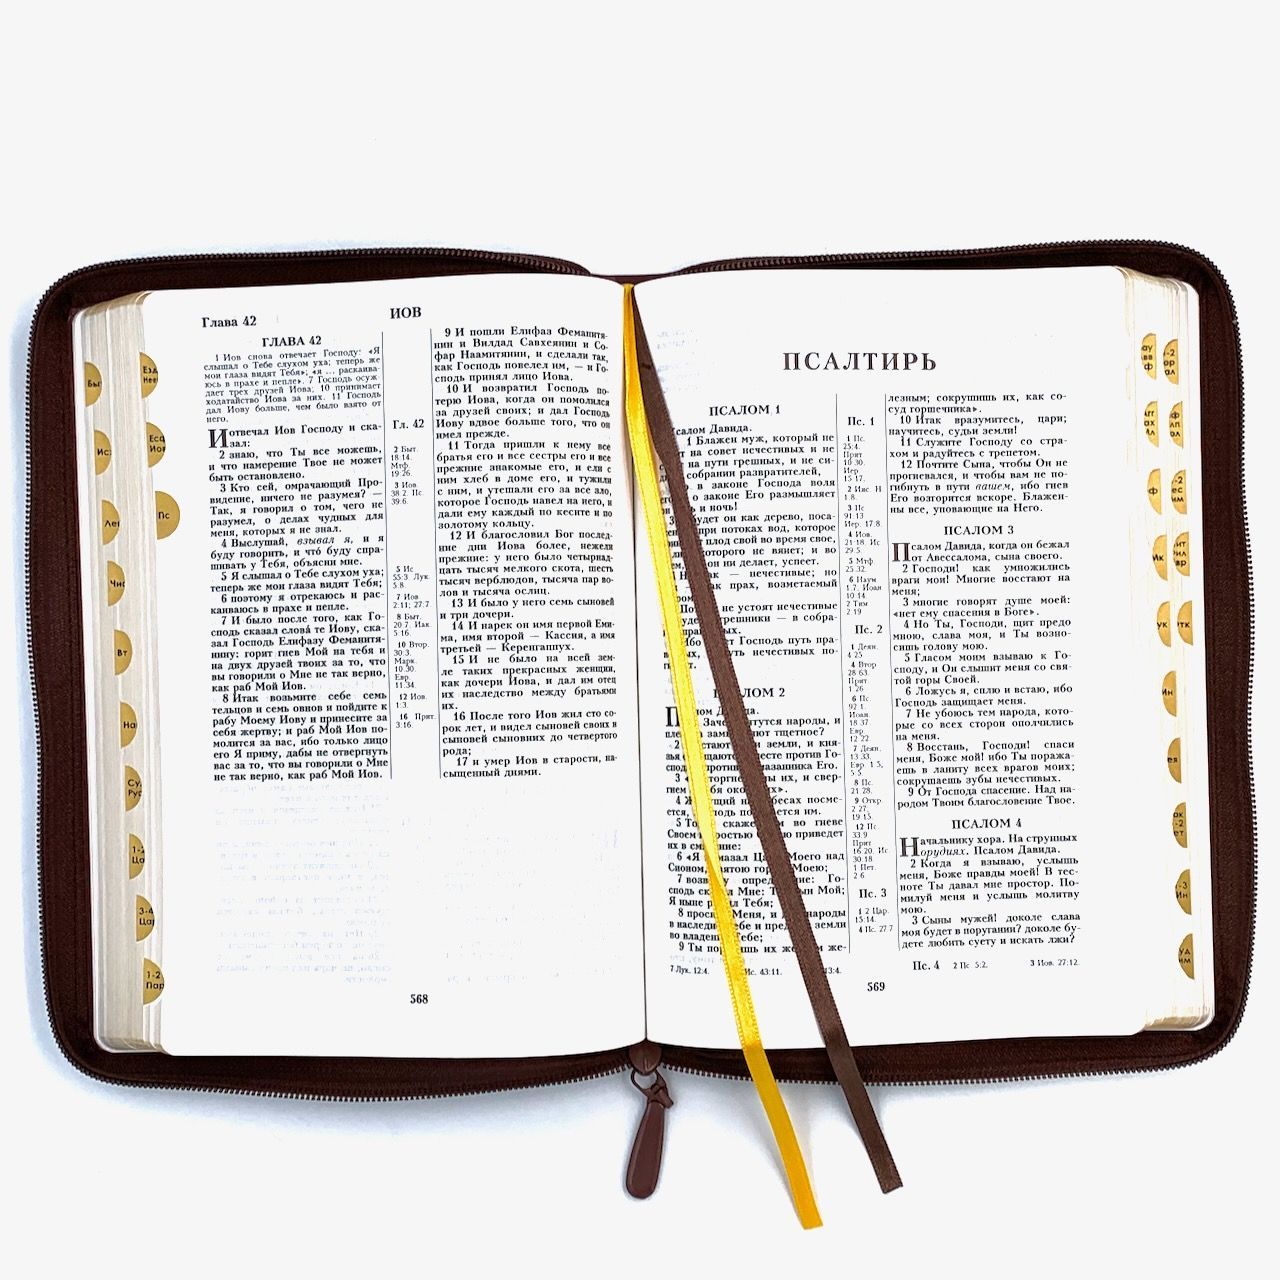 Библия 076zti код 23076-18 дизайн "термо рамка барокко", кожаный переплет на молнии с индексами, цвет коричневый, размер 180x243 мм